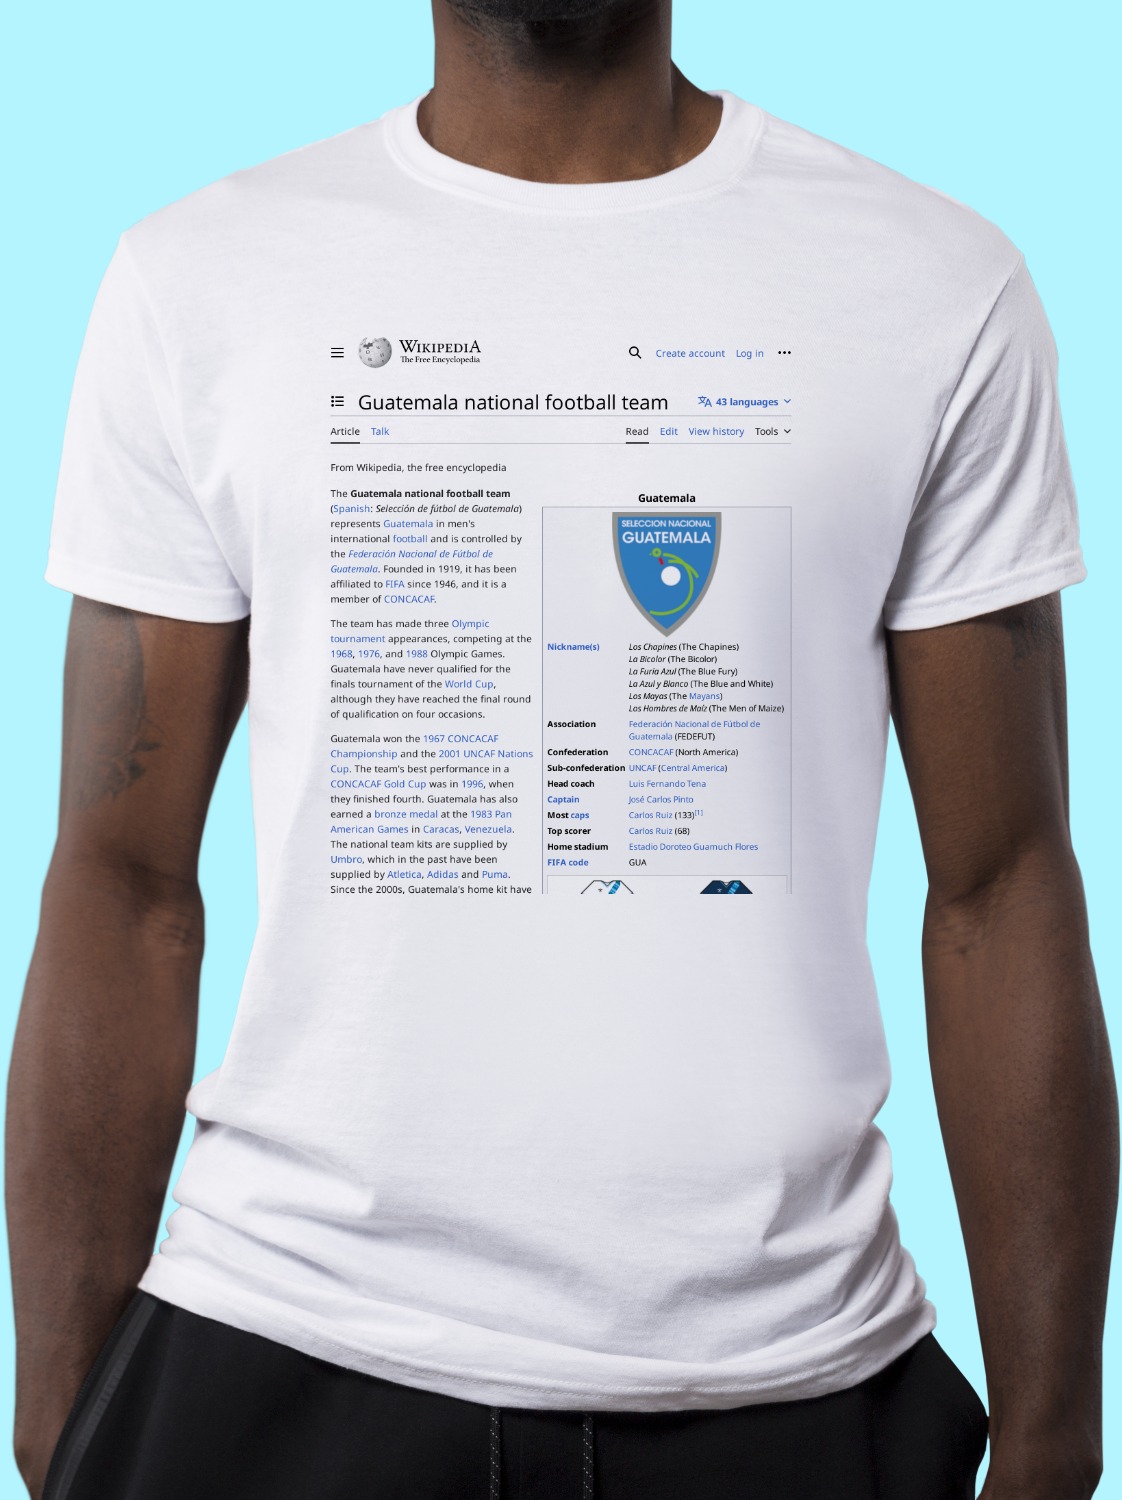 Guatemala_national_football_team Wikipedia Shirt